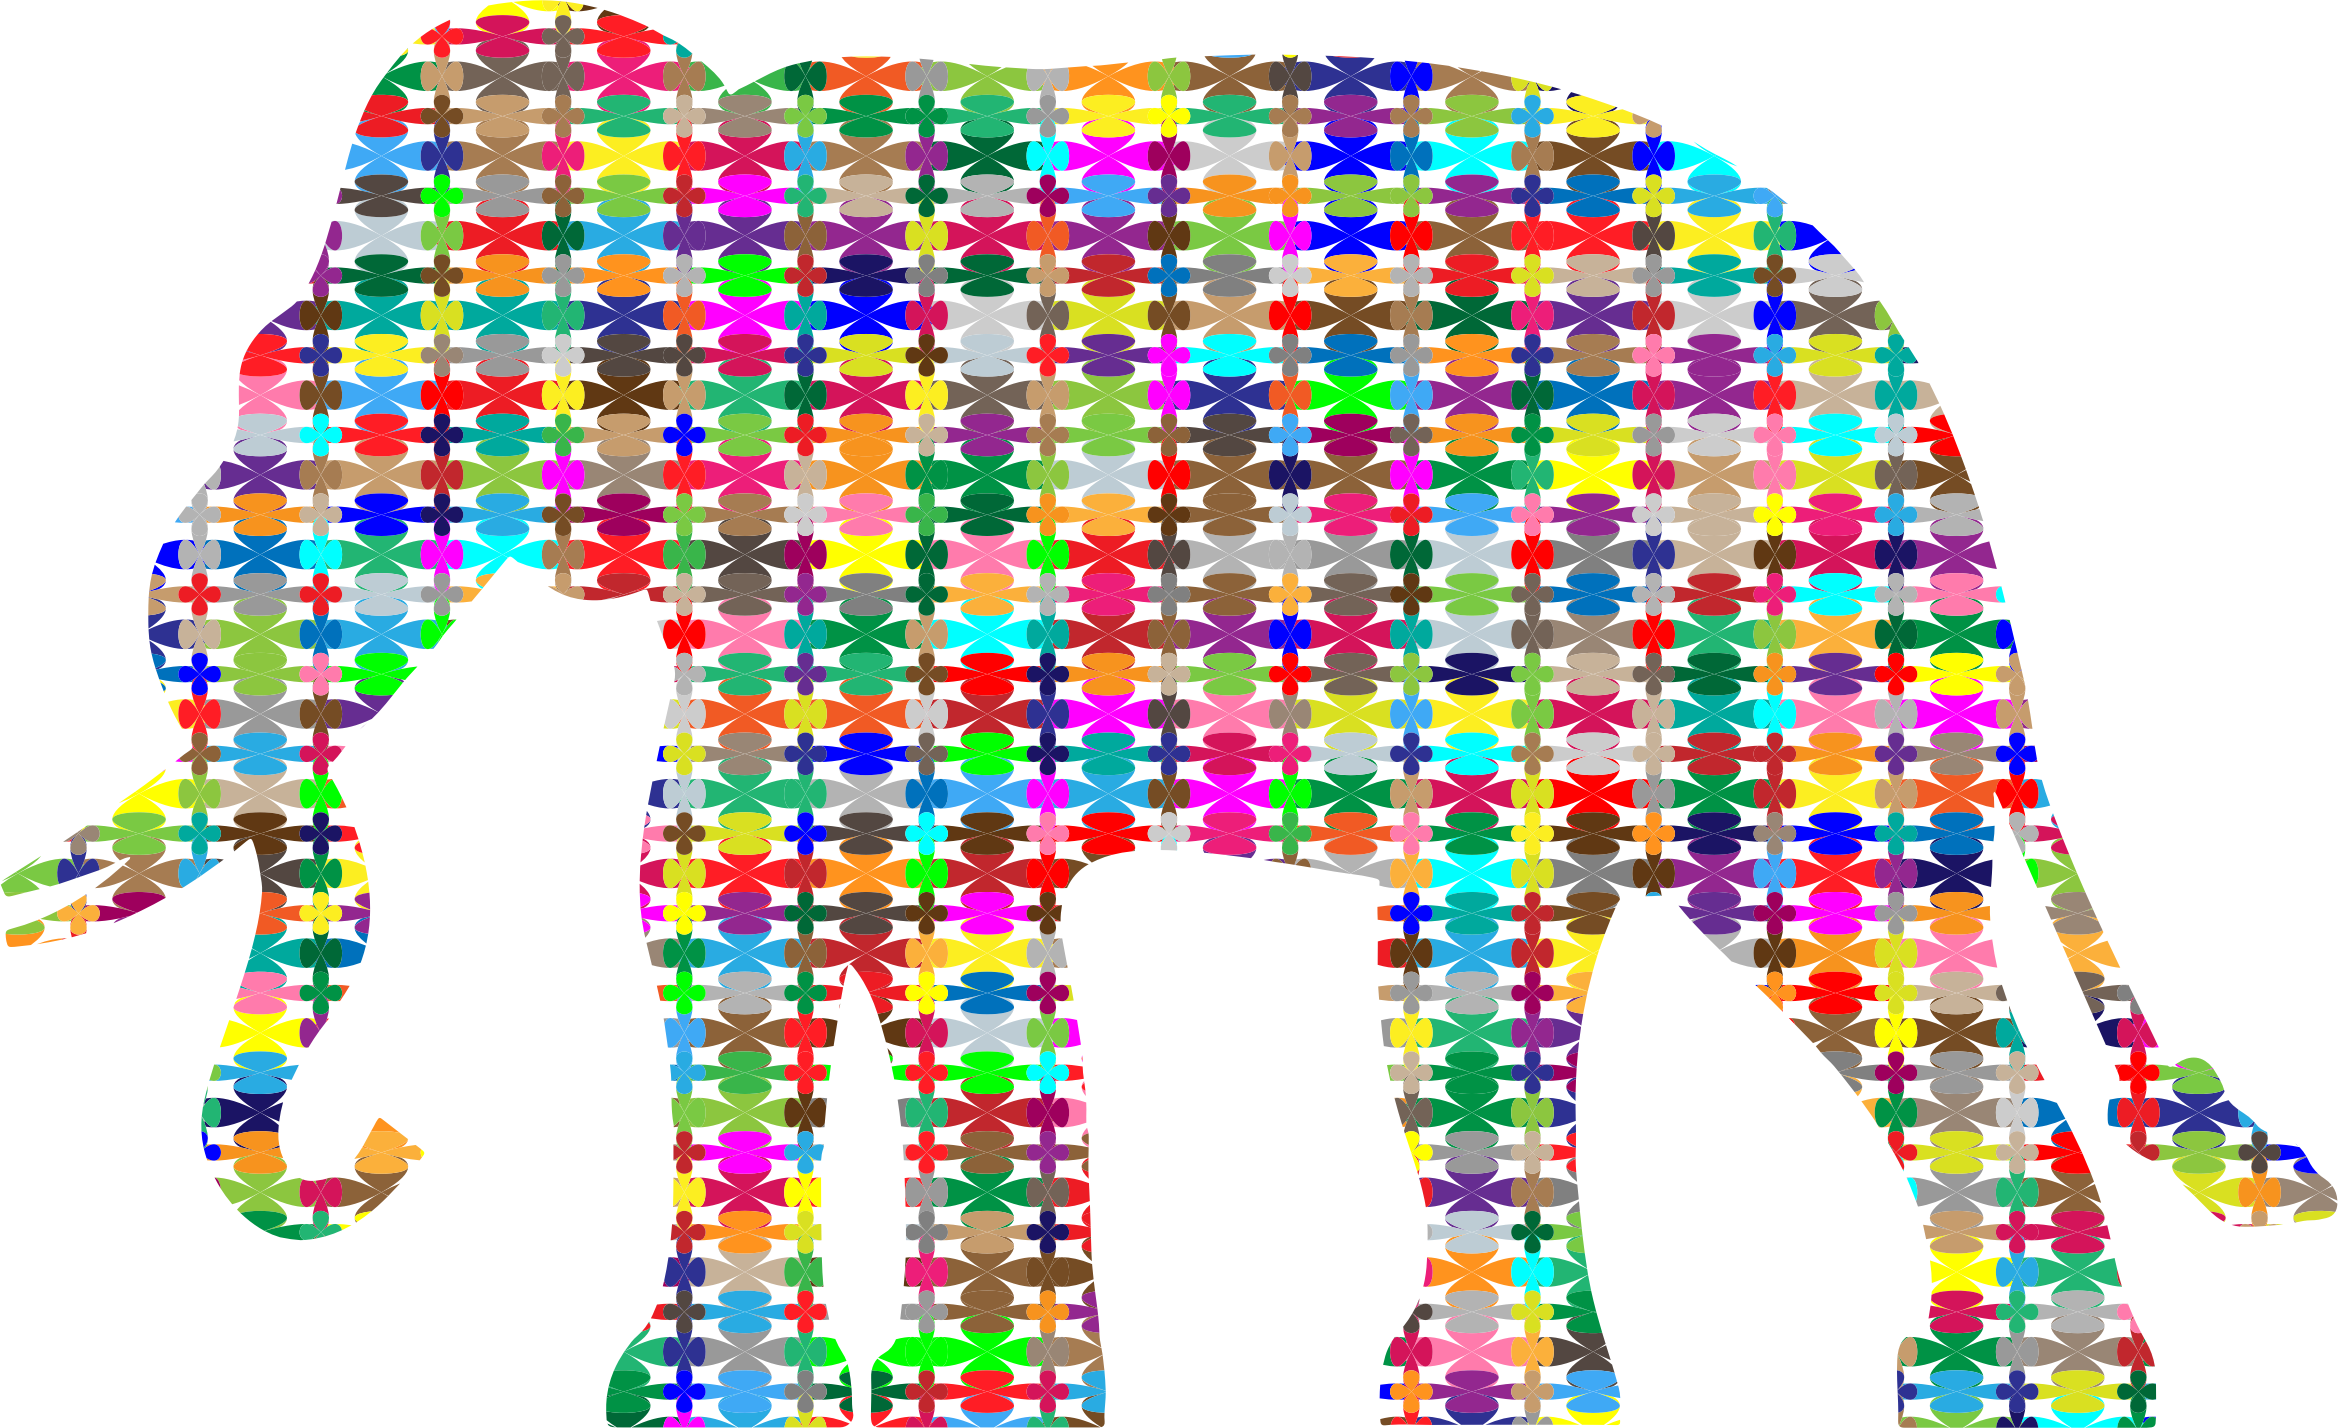 elephants clipart pastel